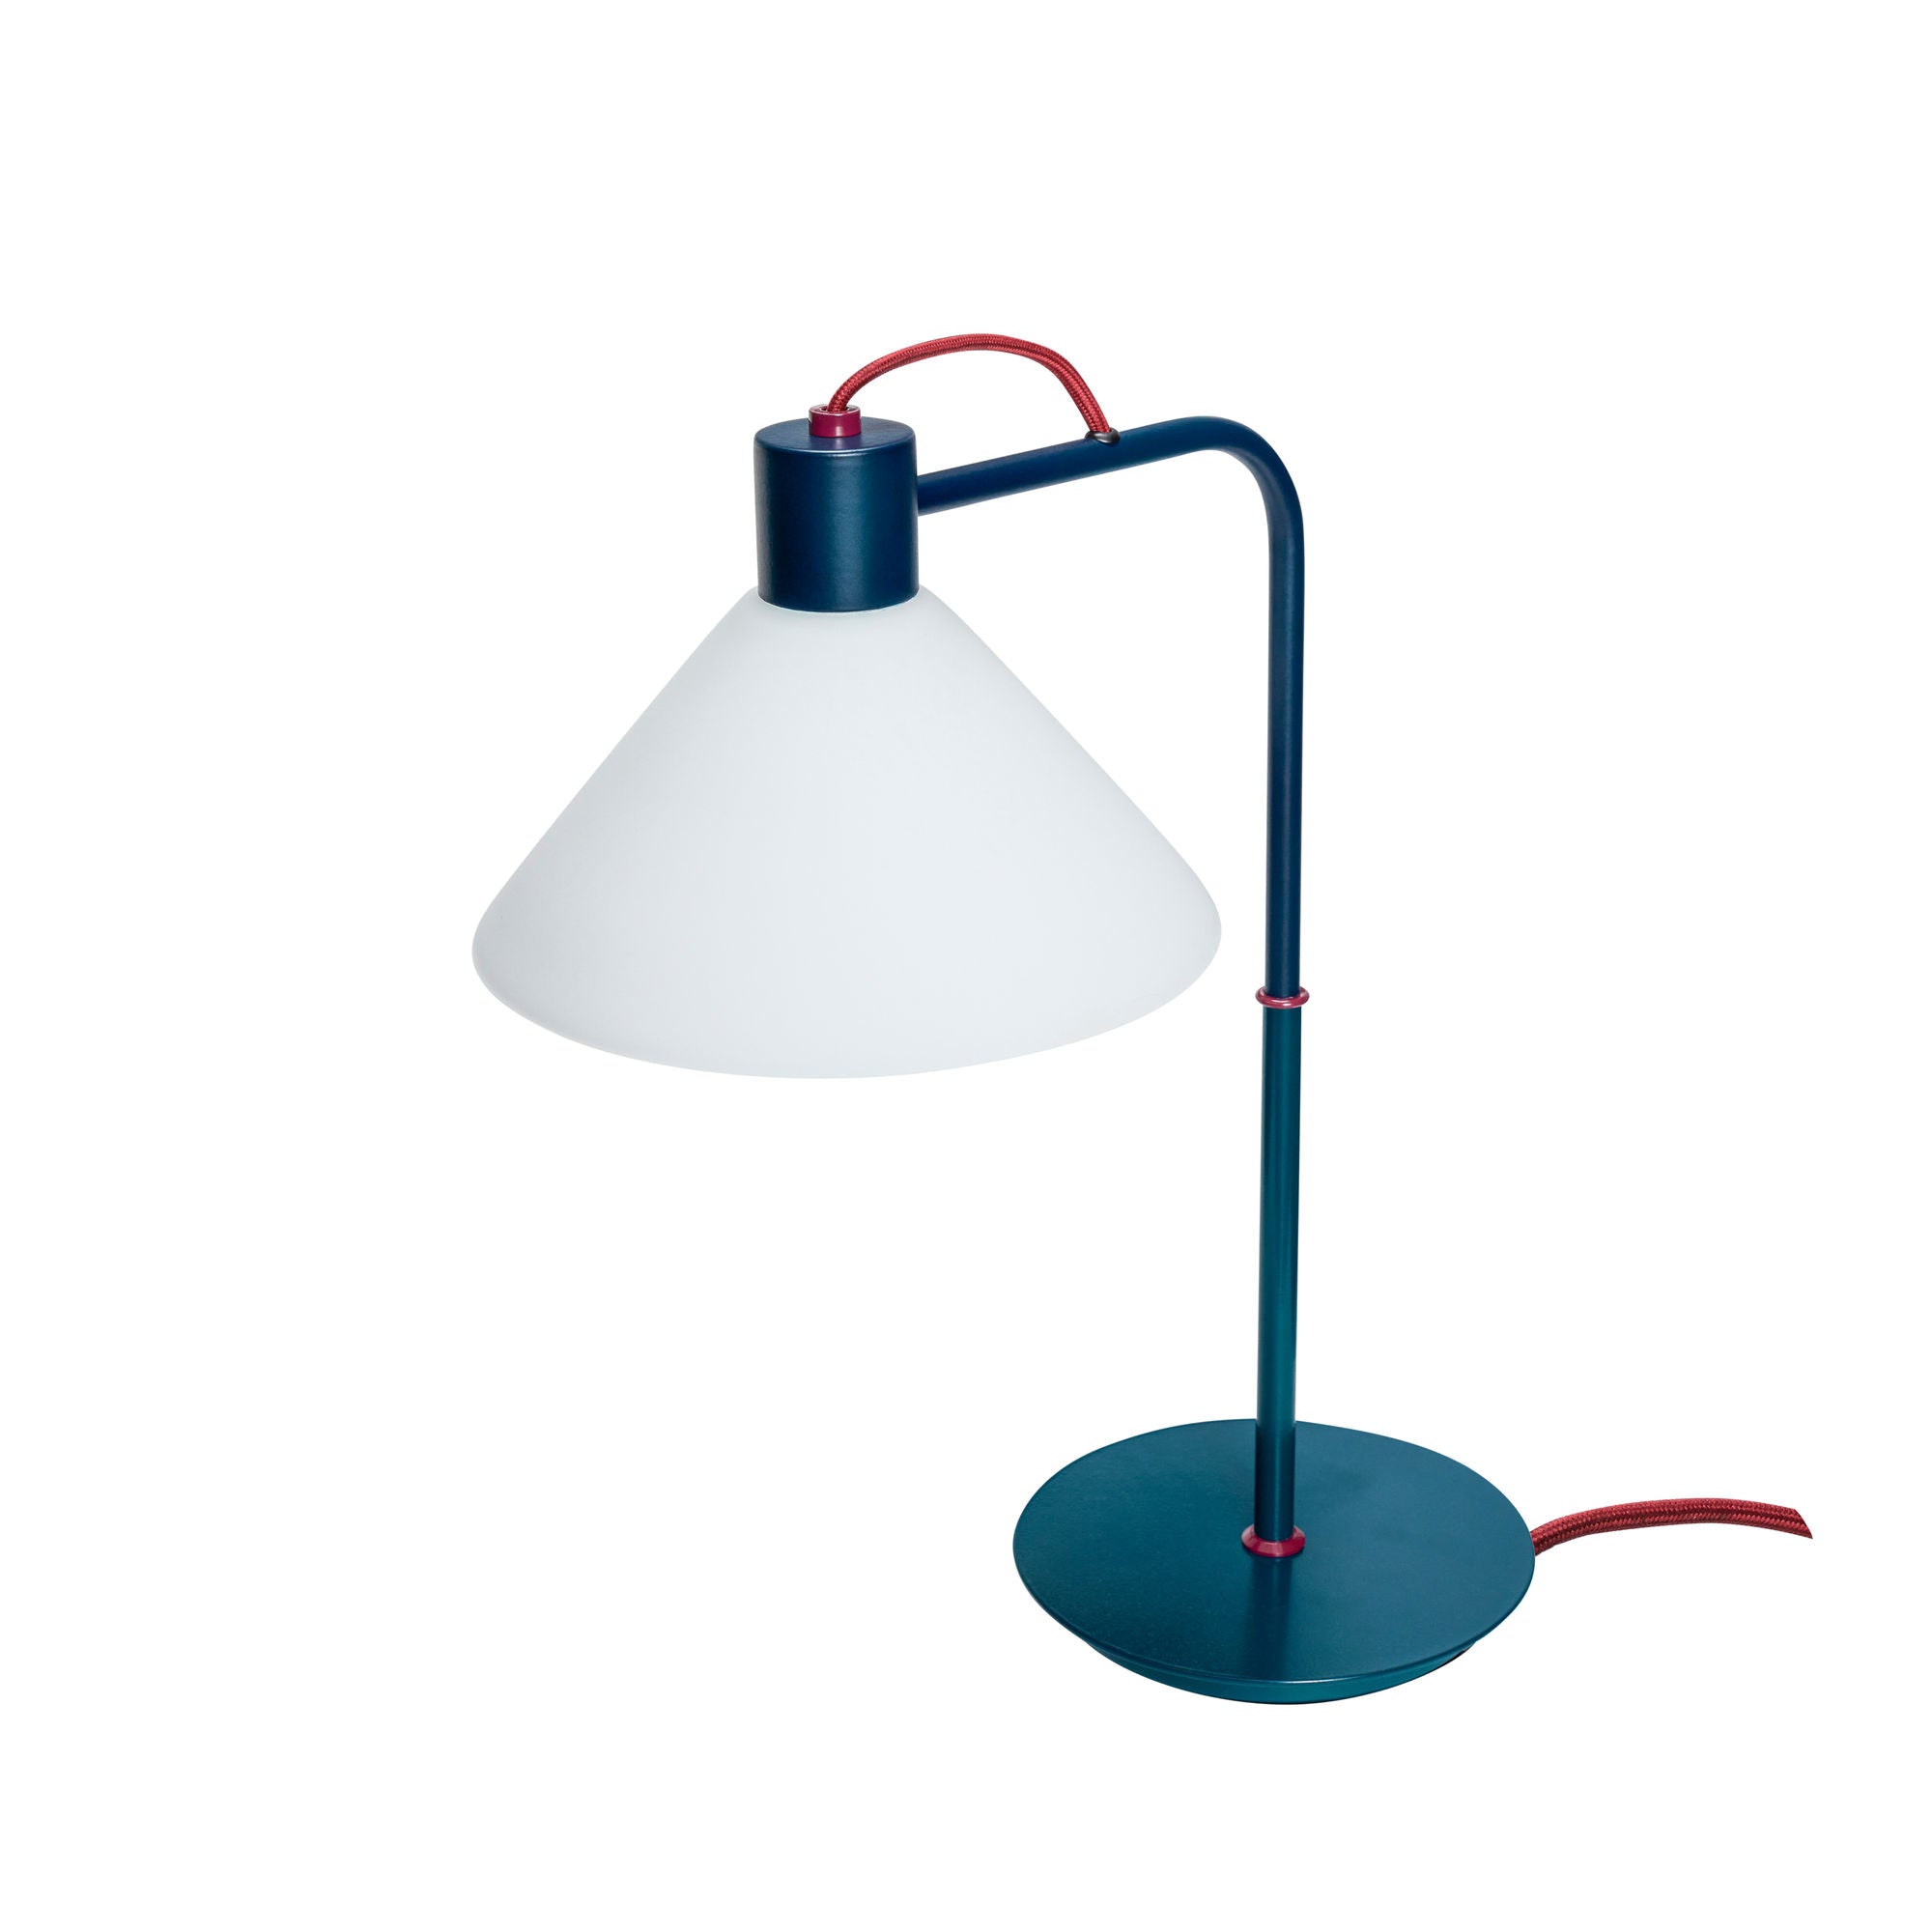 Hübsch Spot Table Lamp Blue